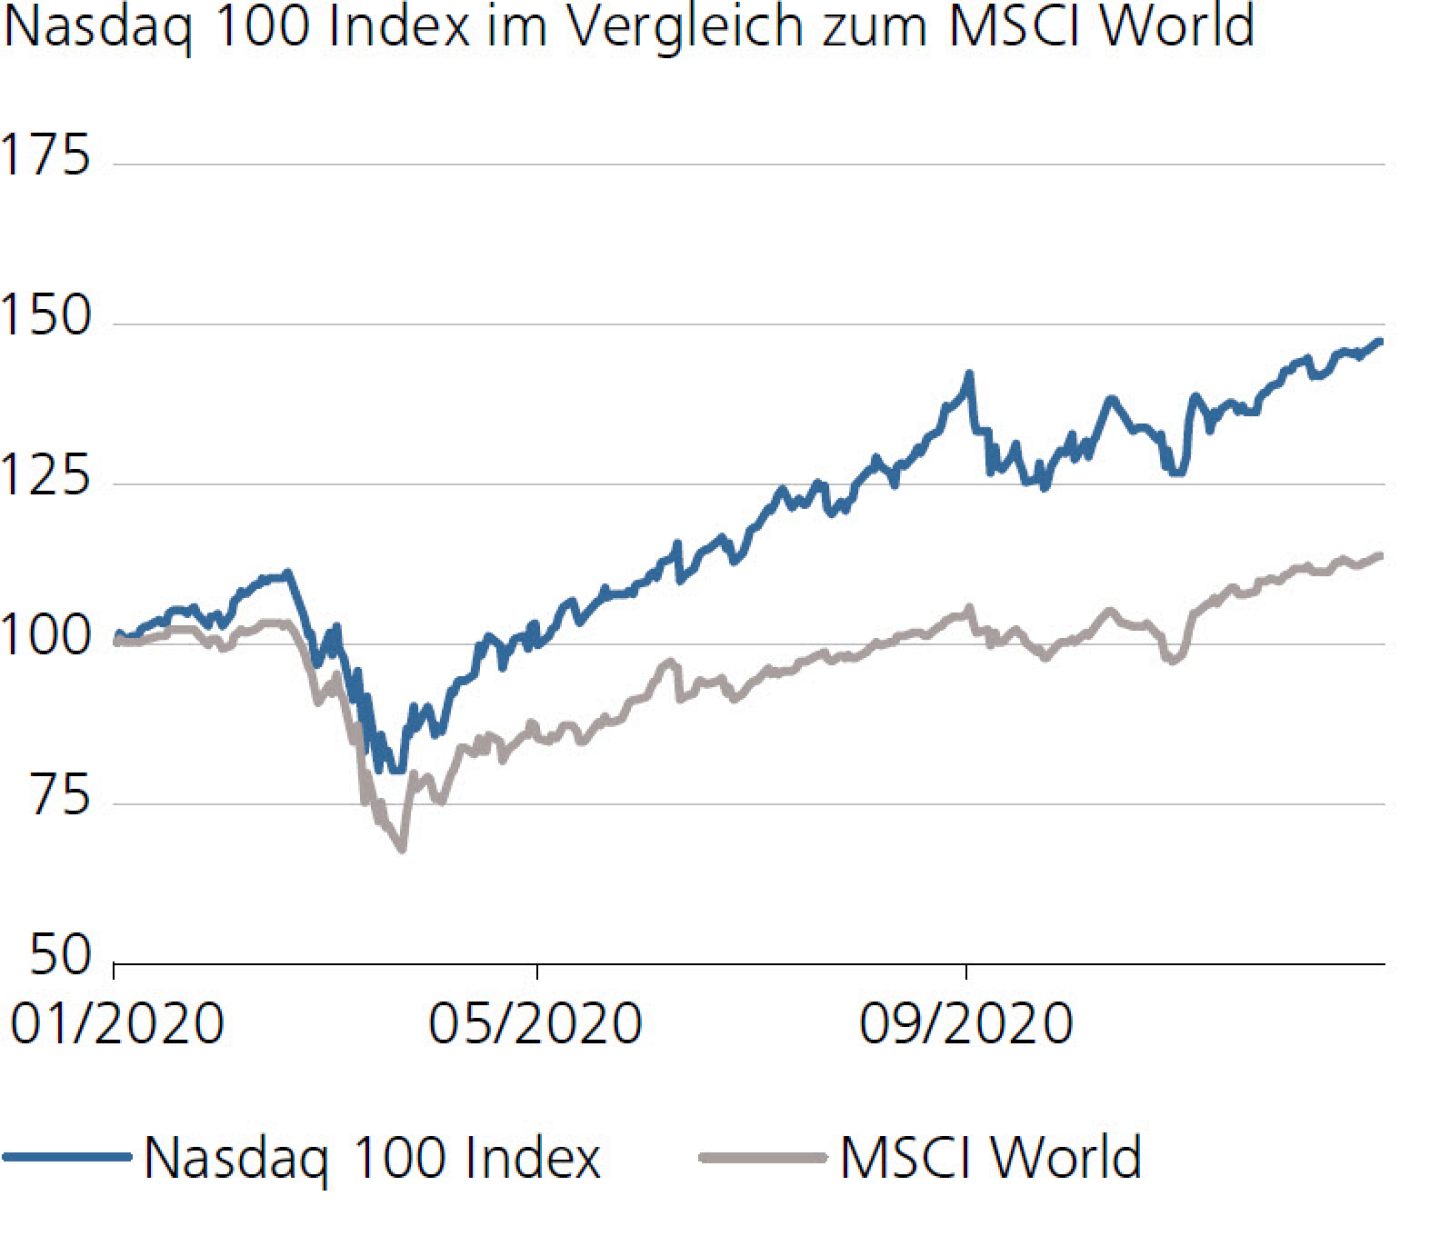 Nasdaq 100 Index im Vergleich zum MSCI World